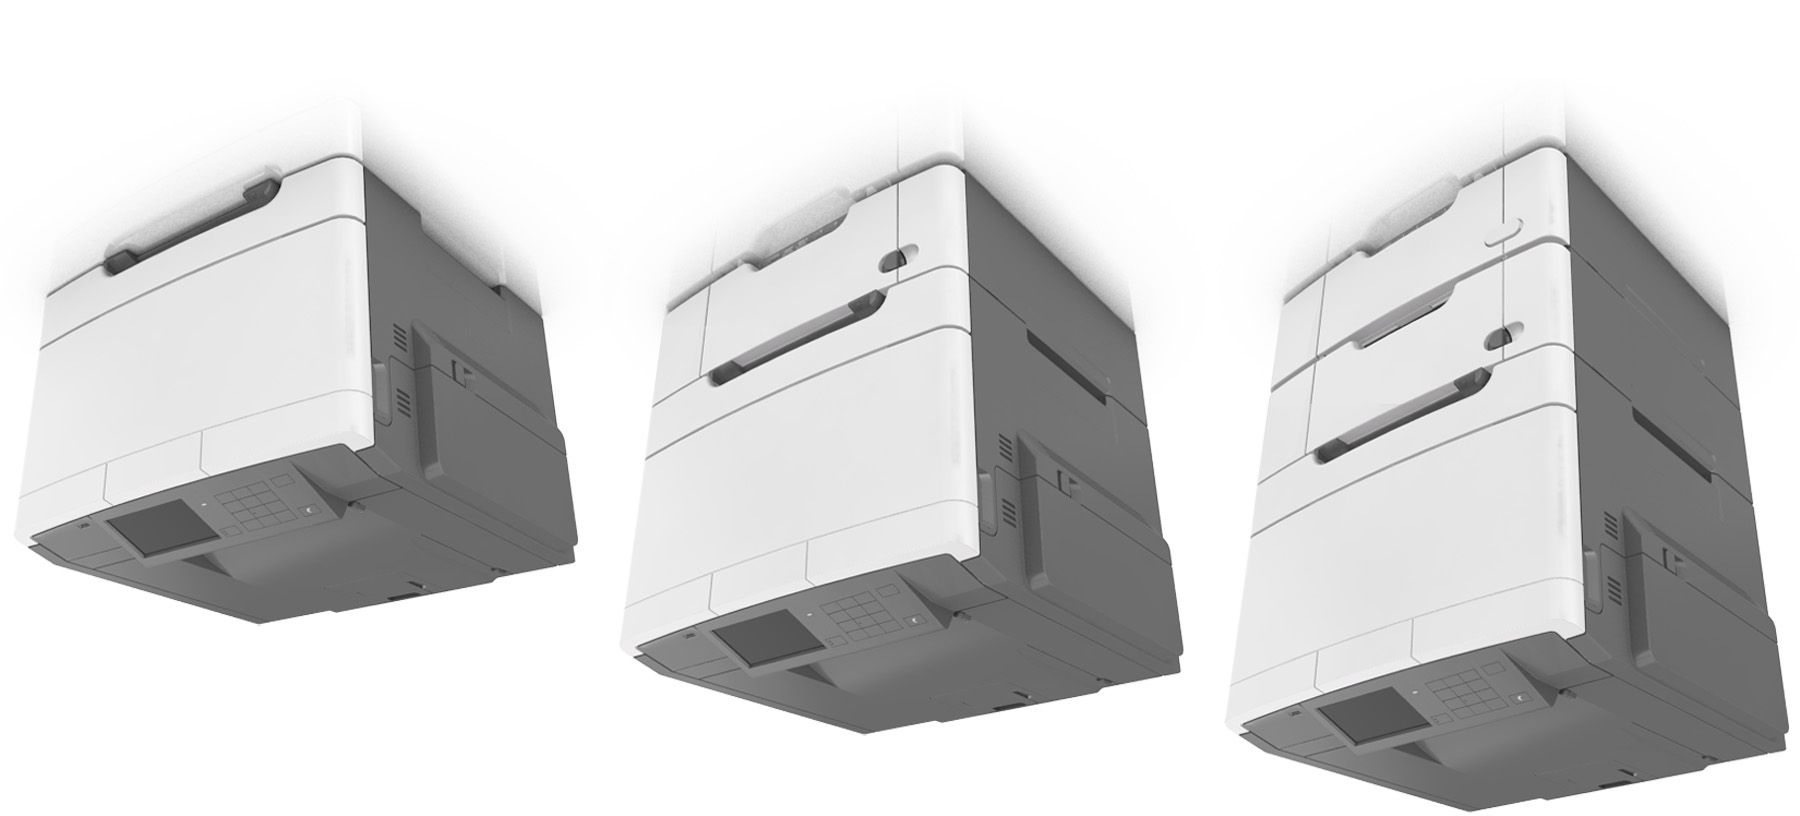 Omgaan met de printer 10 1 Rechterkant 102 mm (4 inch) 2 Voorkant 508 mm (20 inch) 3 Linkerkant 152 mm (6 inch) 4 Achterkant 102 mm (4 inch) 5 Bovenkant 254 mm (10 inch) Printerconfiguraties LET OP: